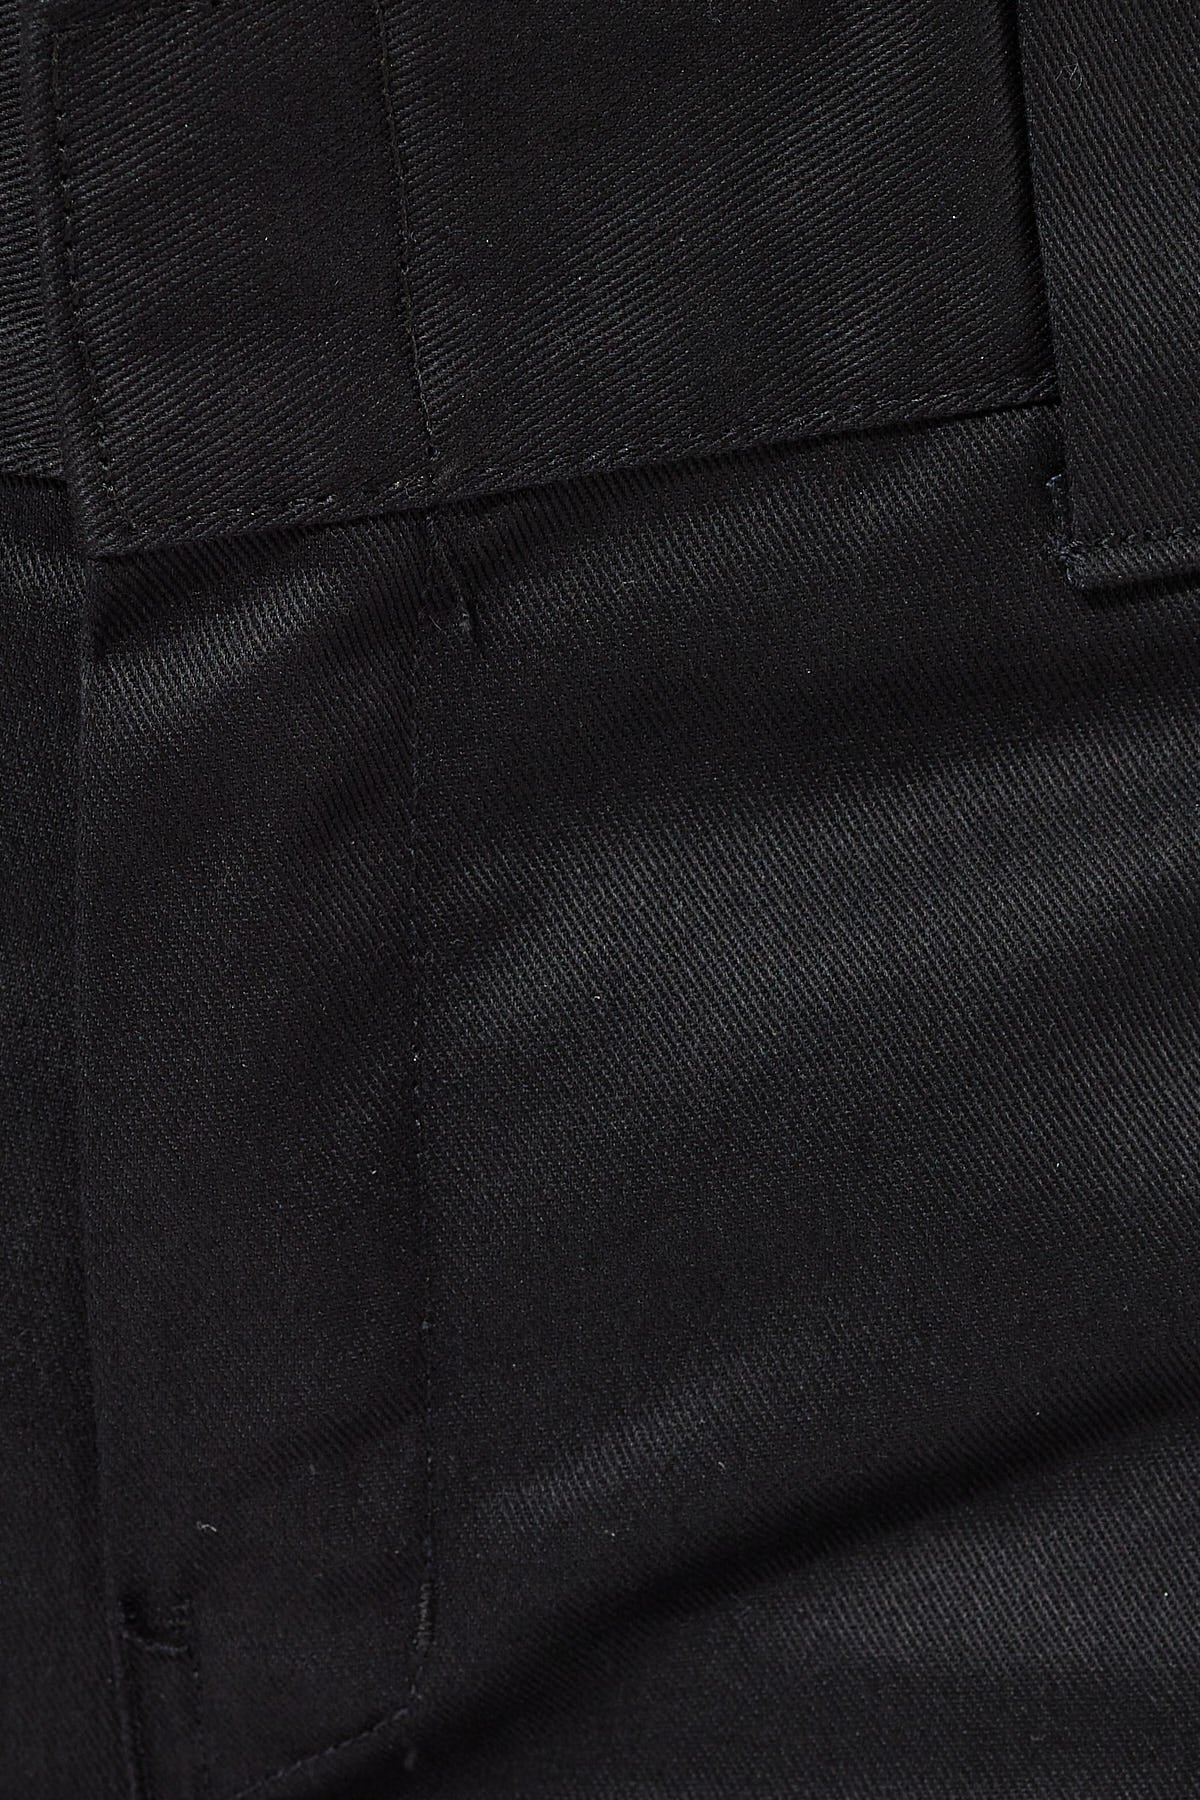 Dickies 873 Pant Black – Universal Store